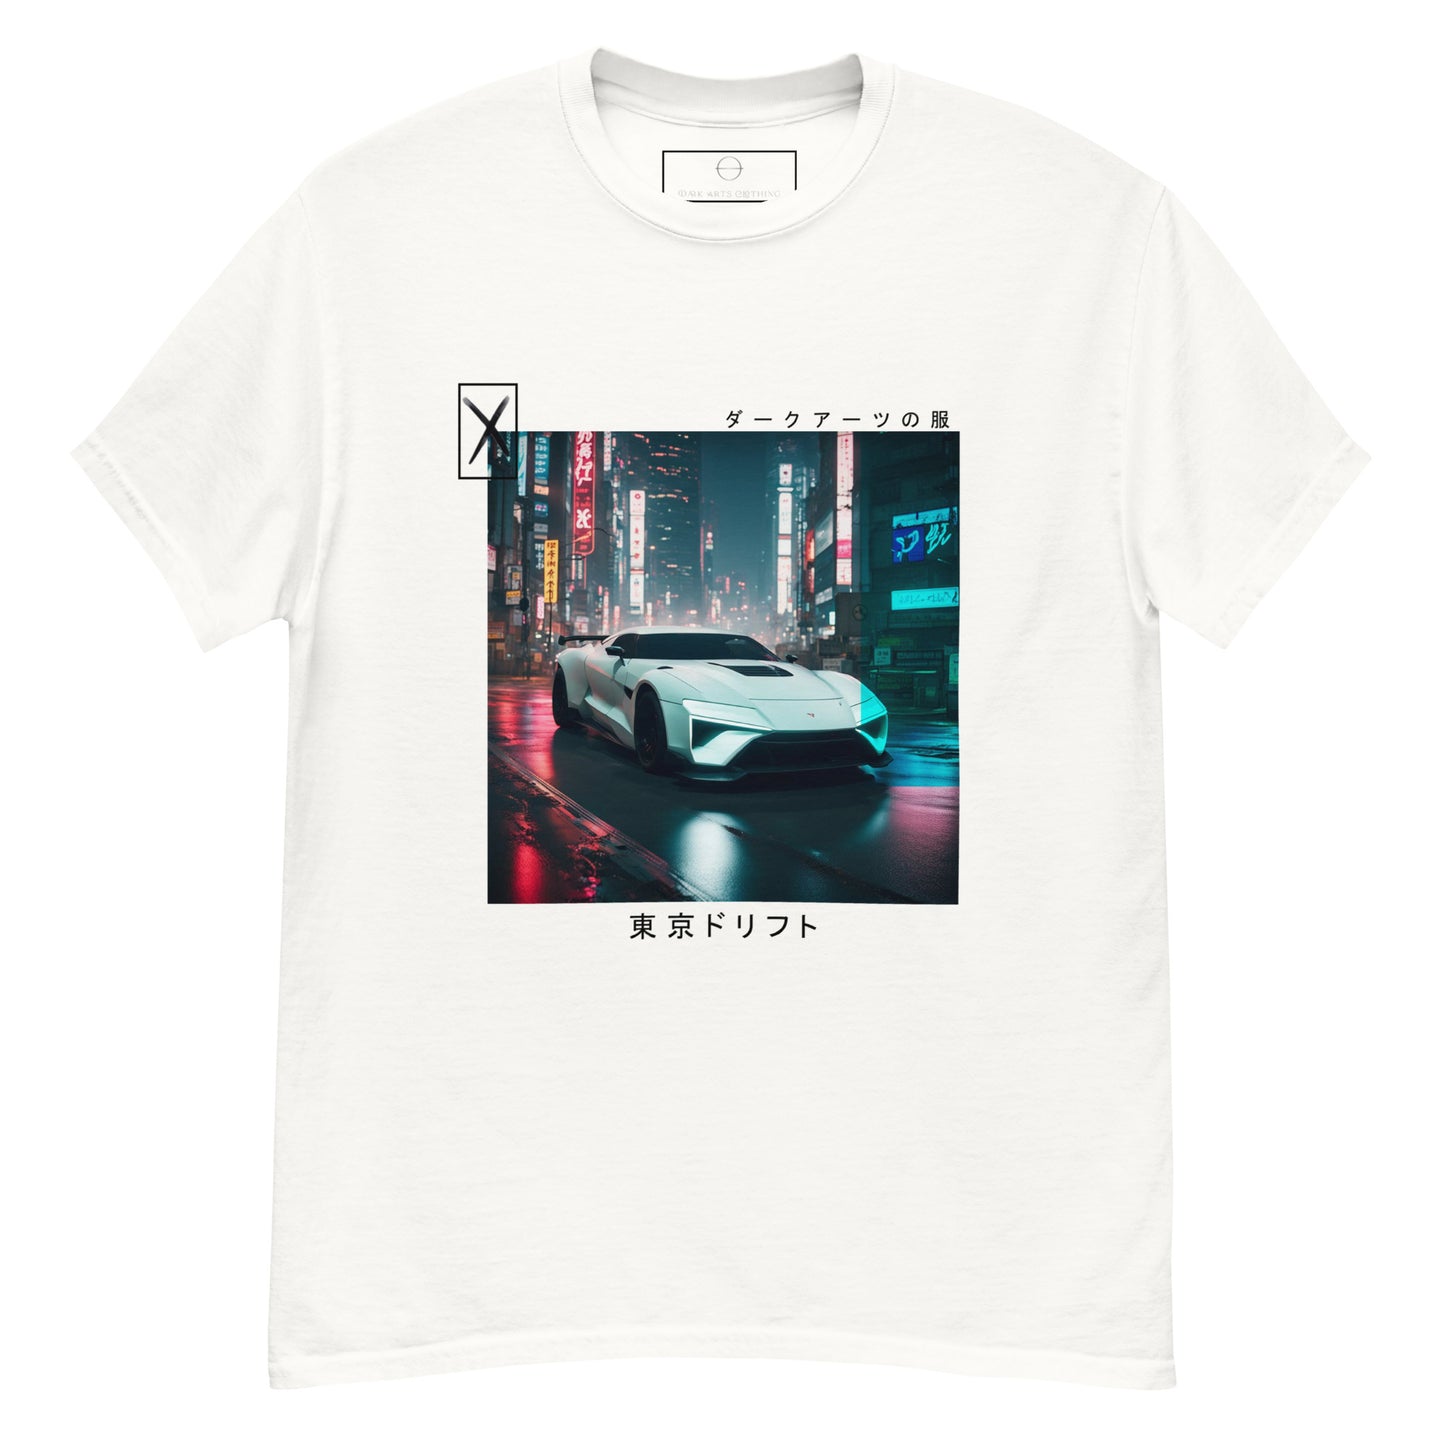 Tokyo Drift IX - T Shirt